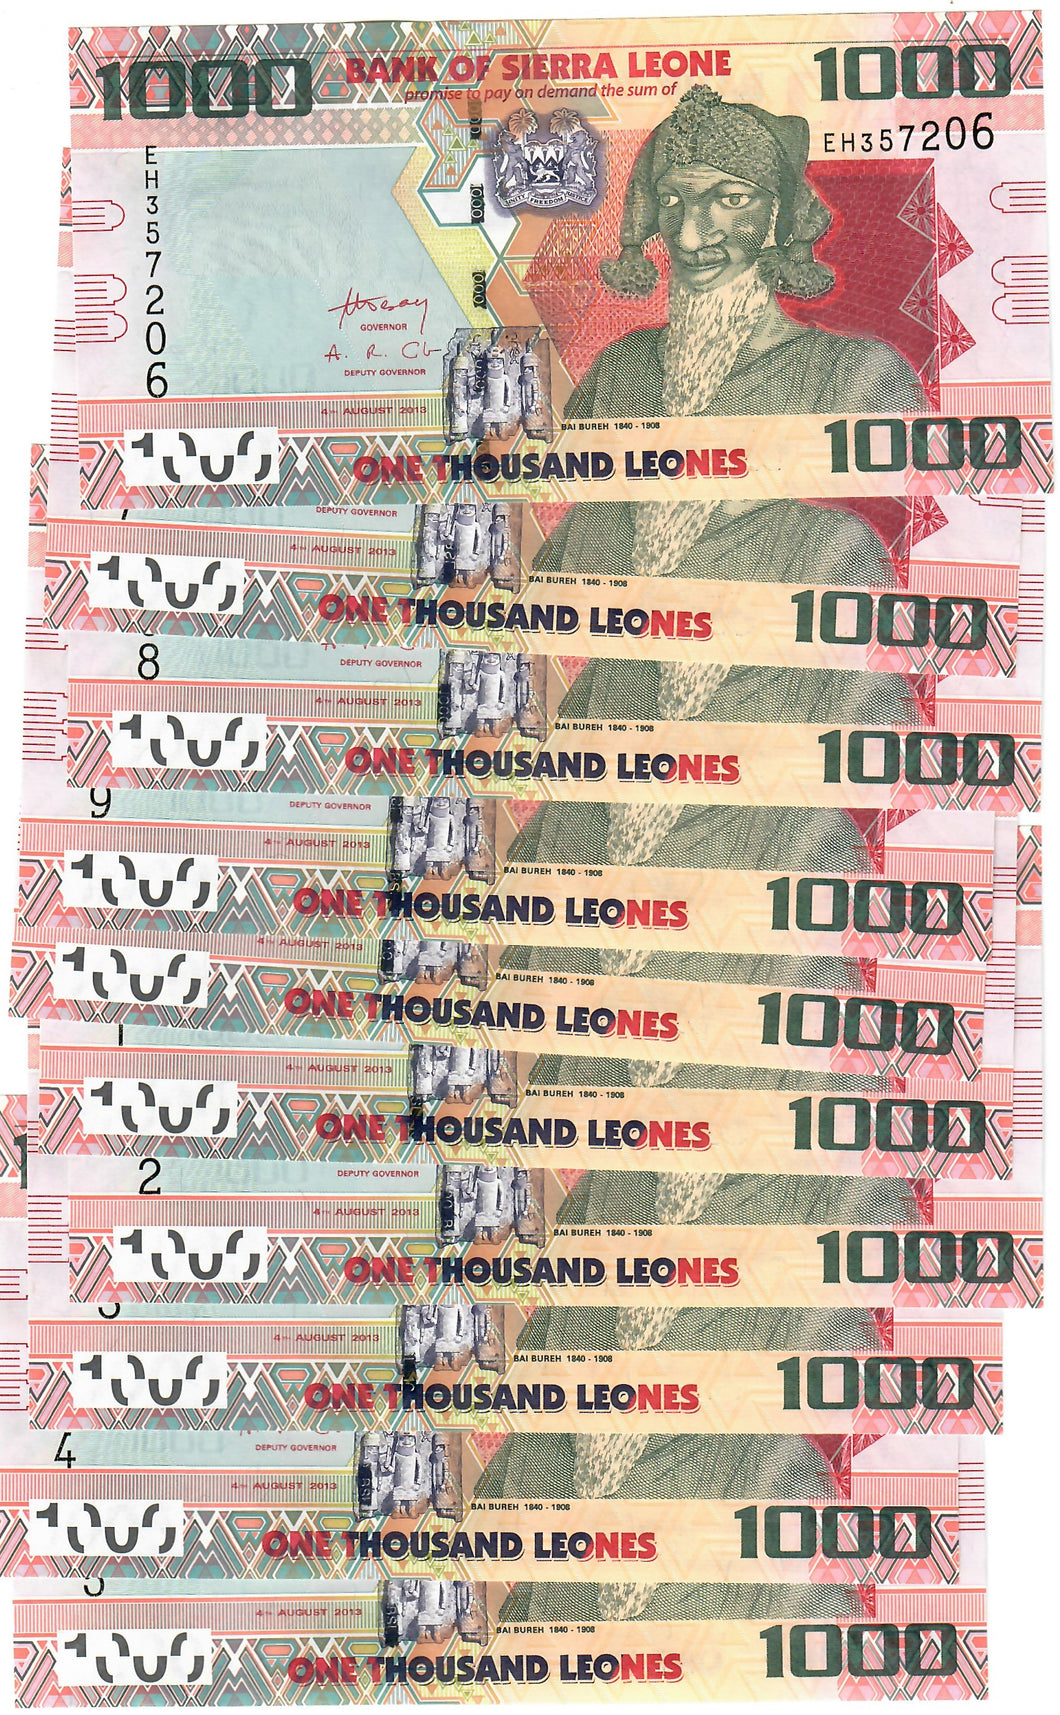 Sierra Leone 10x 1000 Leones 2013 UNC